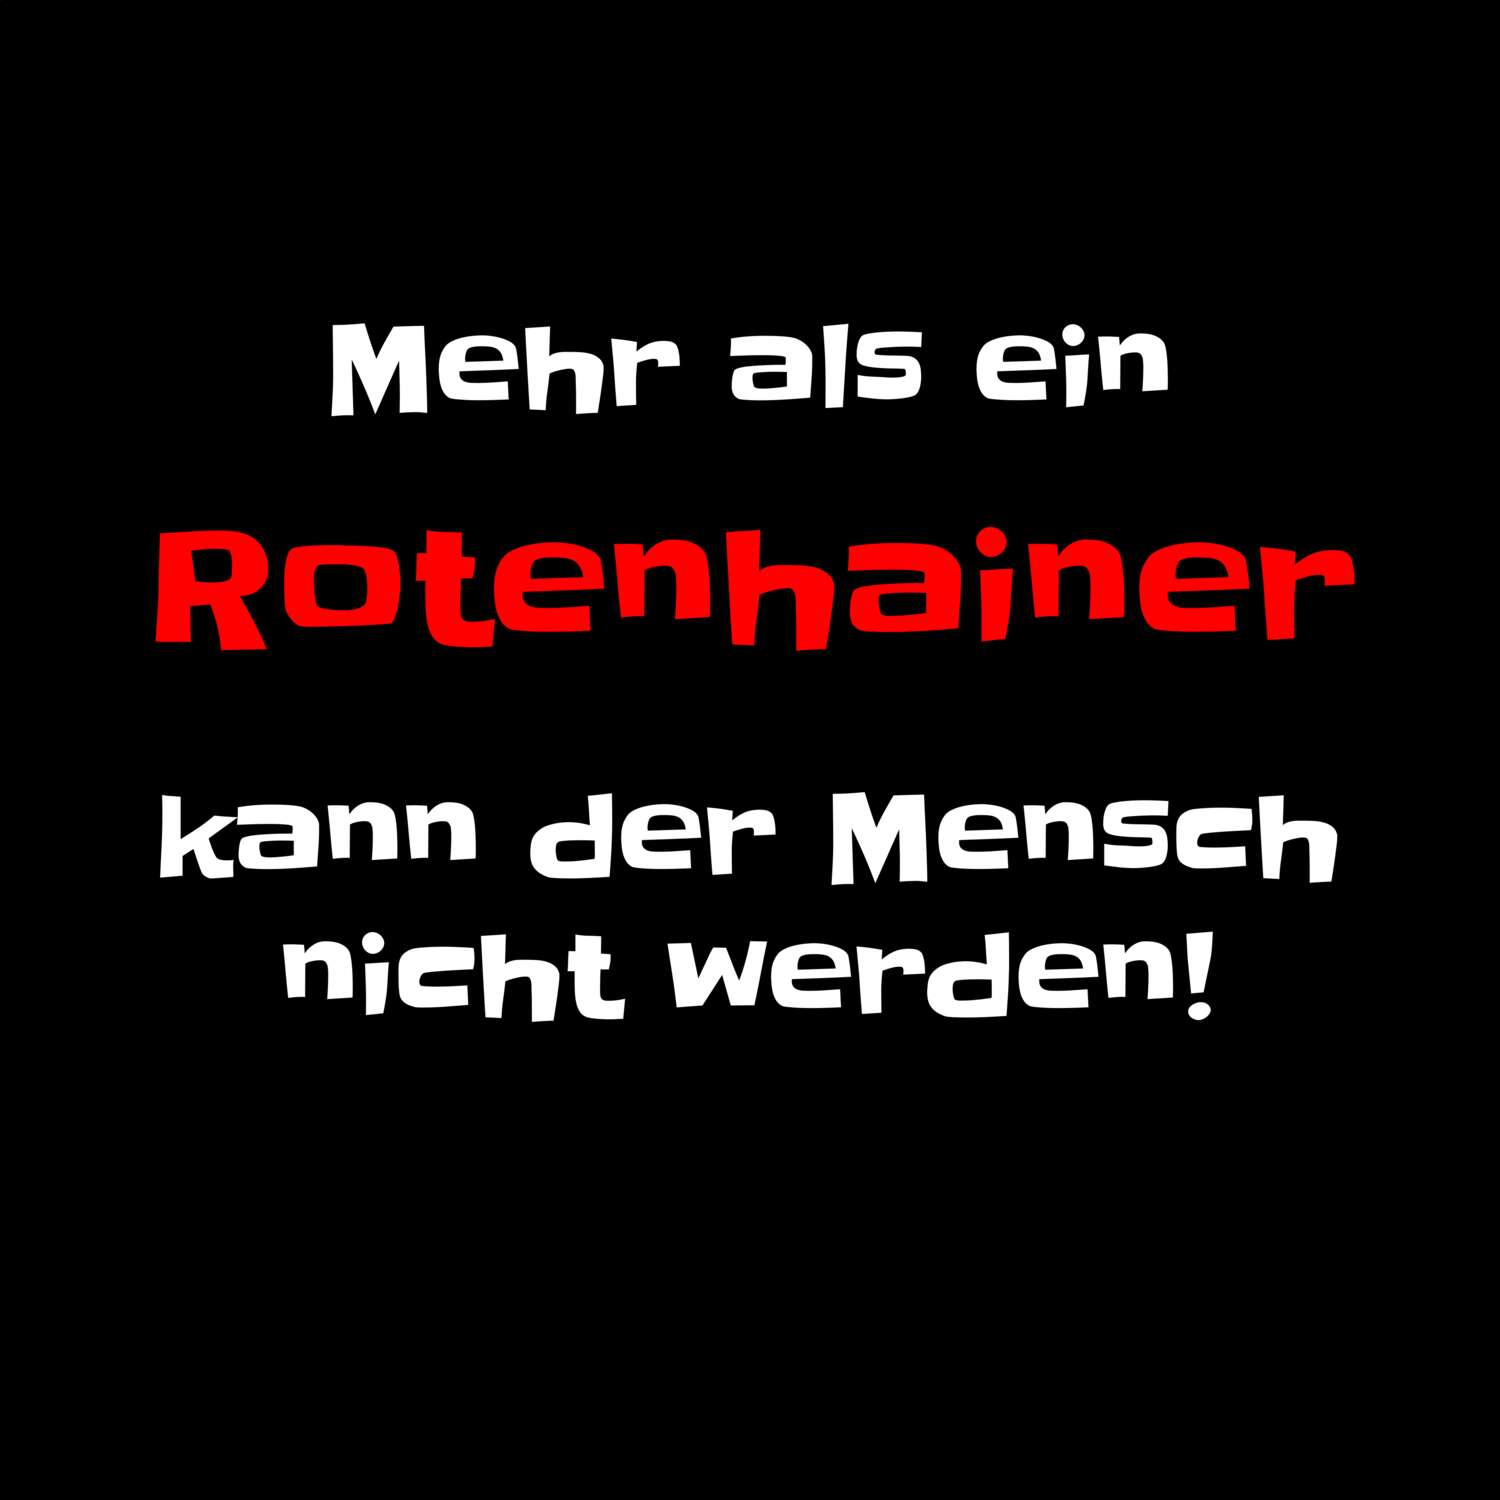 Rotenhain T-Shirt »Mehr als ein«